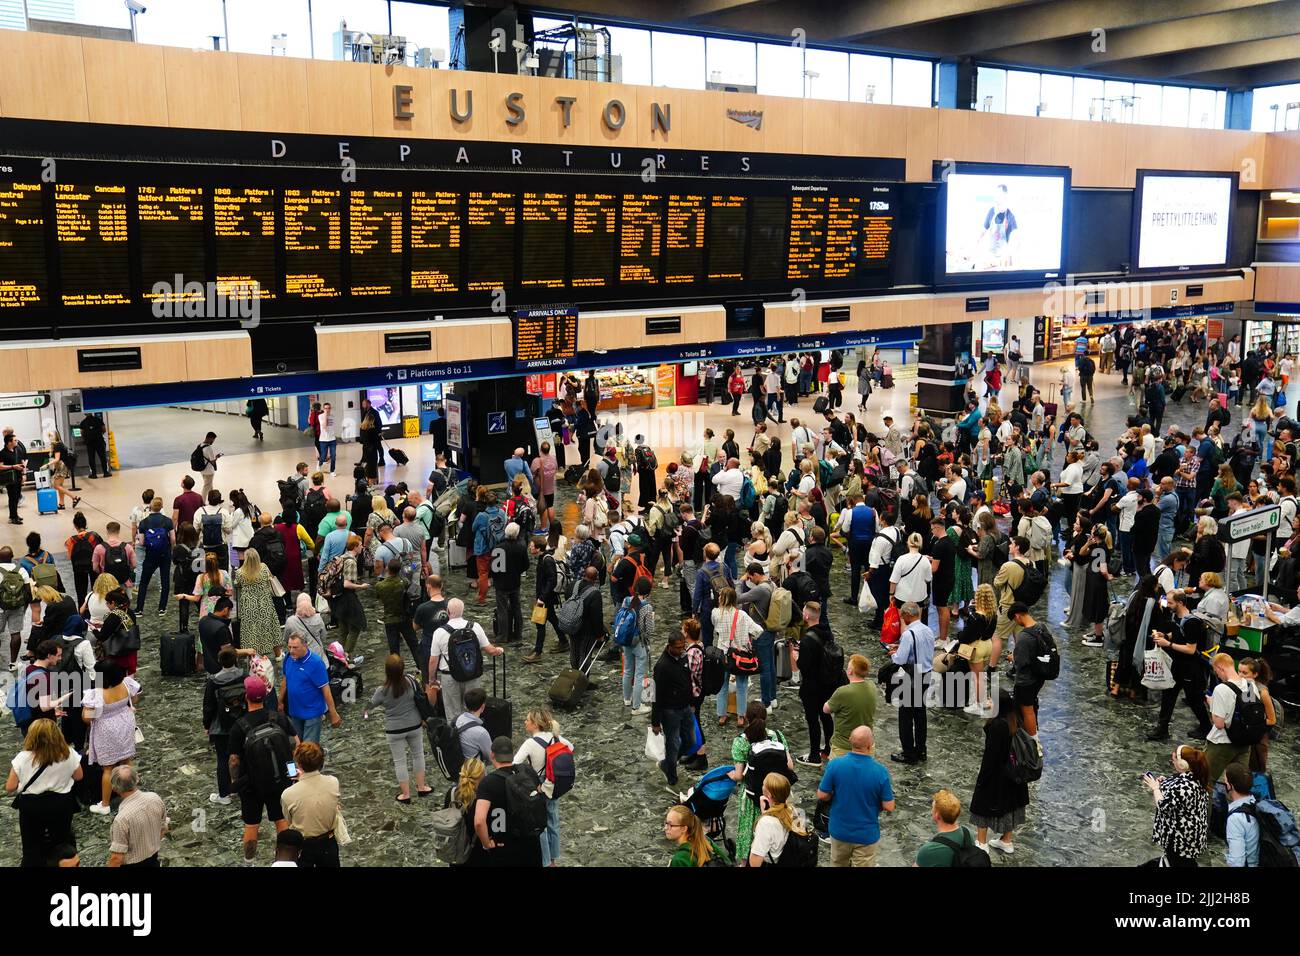 Menschen am Bahnhof Euston in London, da viele Familien zu Beginn der Sommerferien für viele Schulen in England und Wales auf Reisen gehen. Bilddatum: Freitag, 22. Juli 2022. Stockfoto